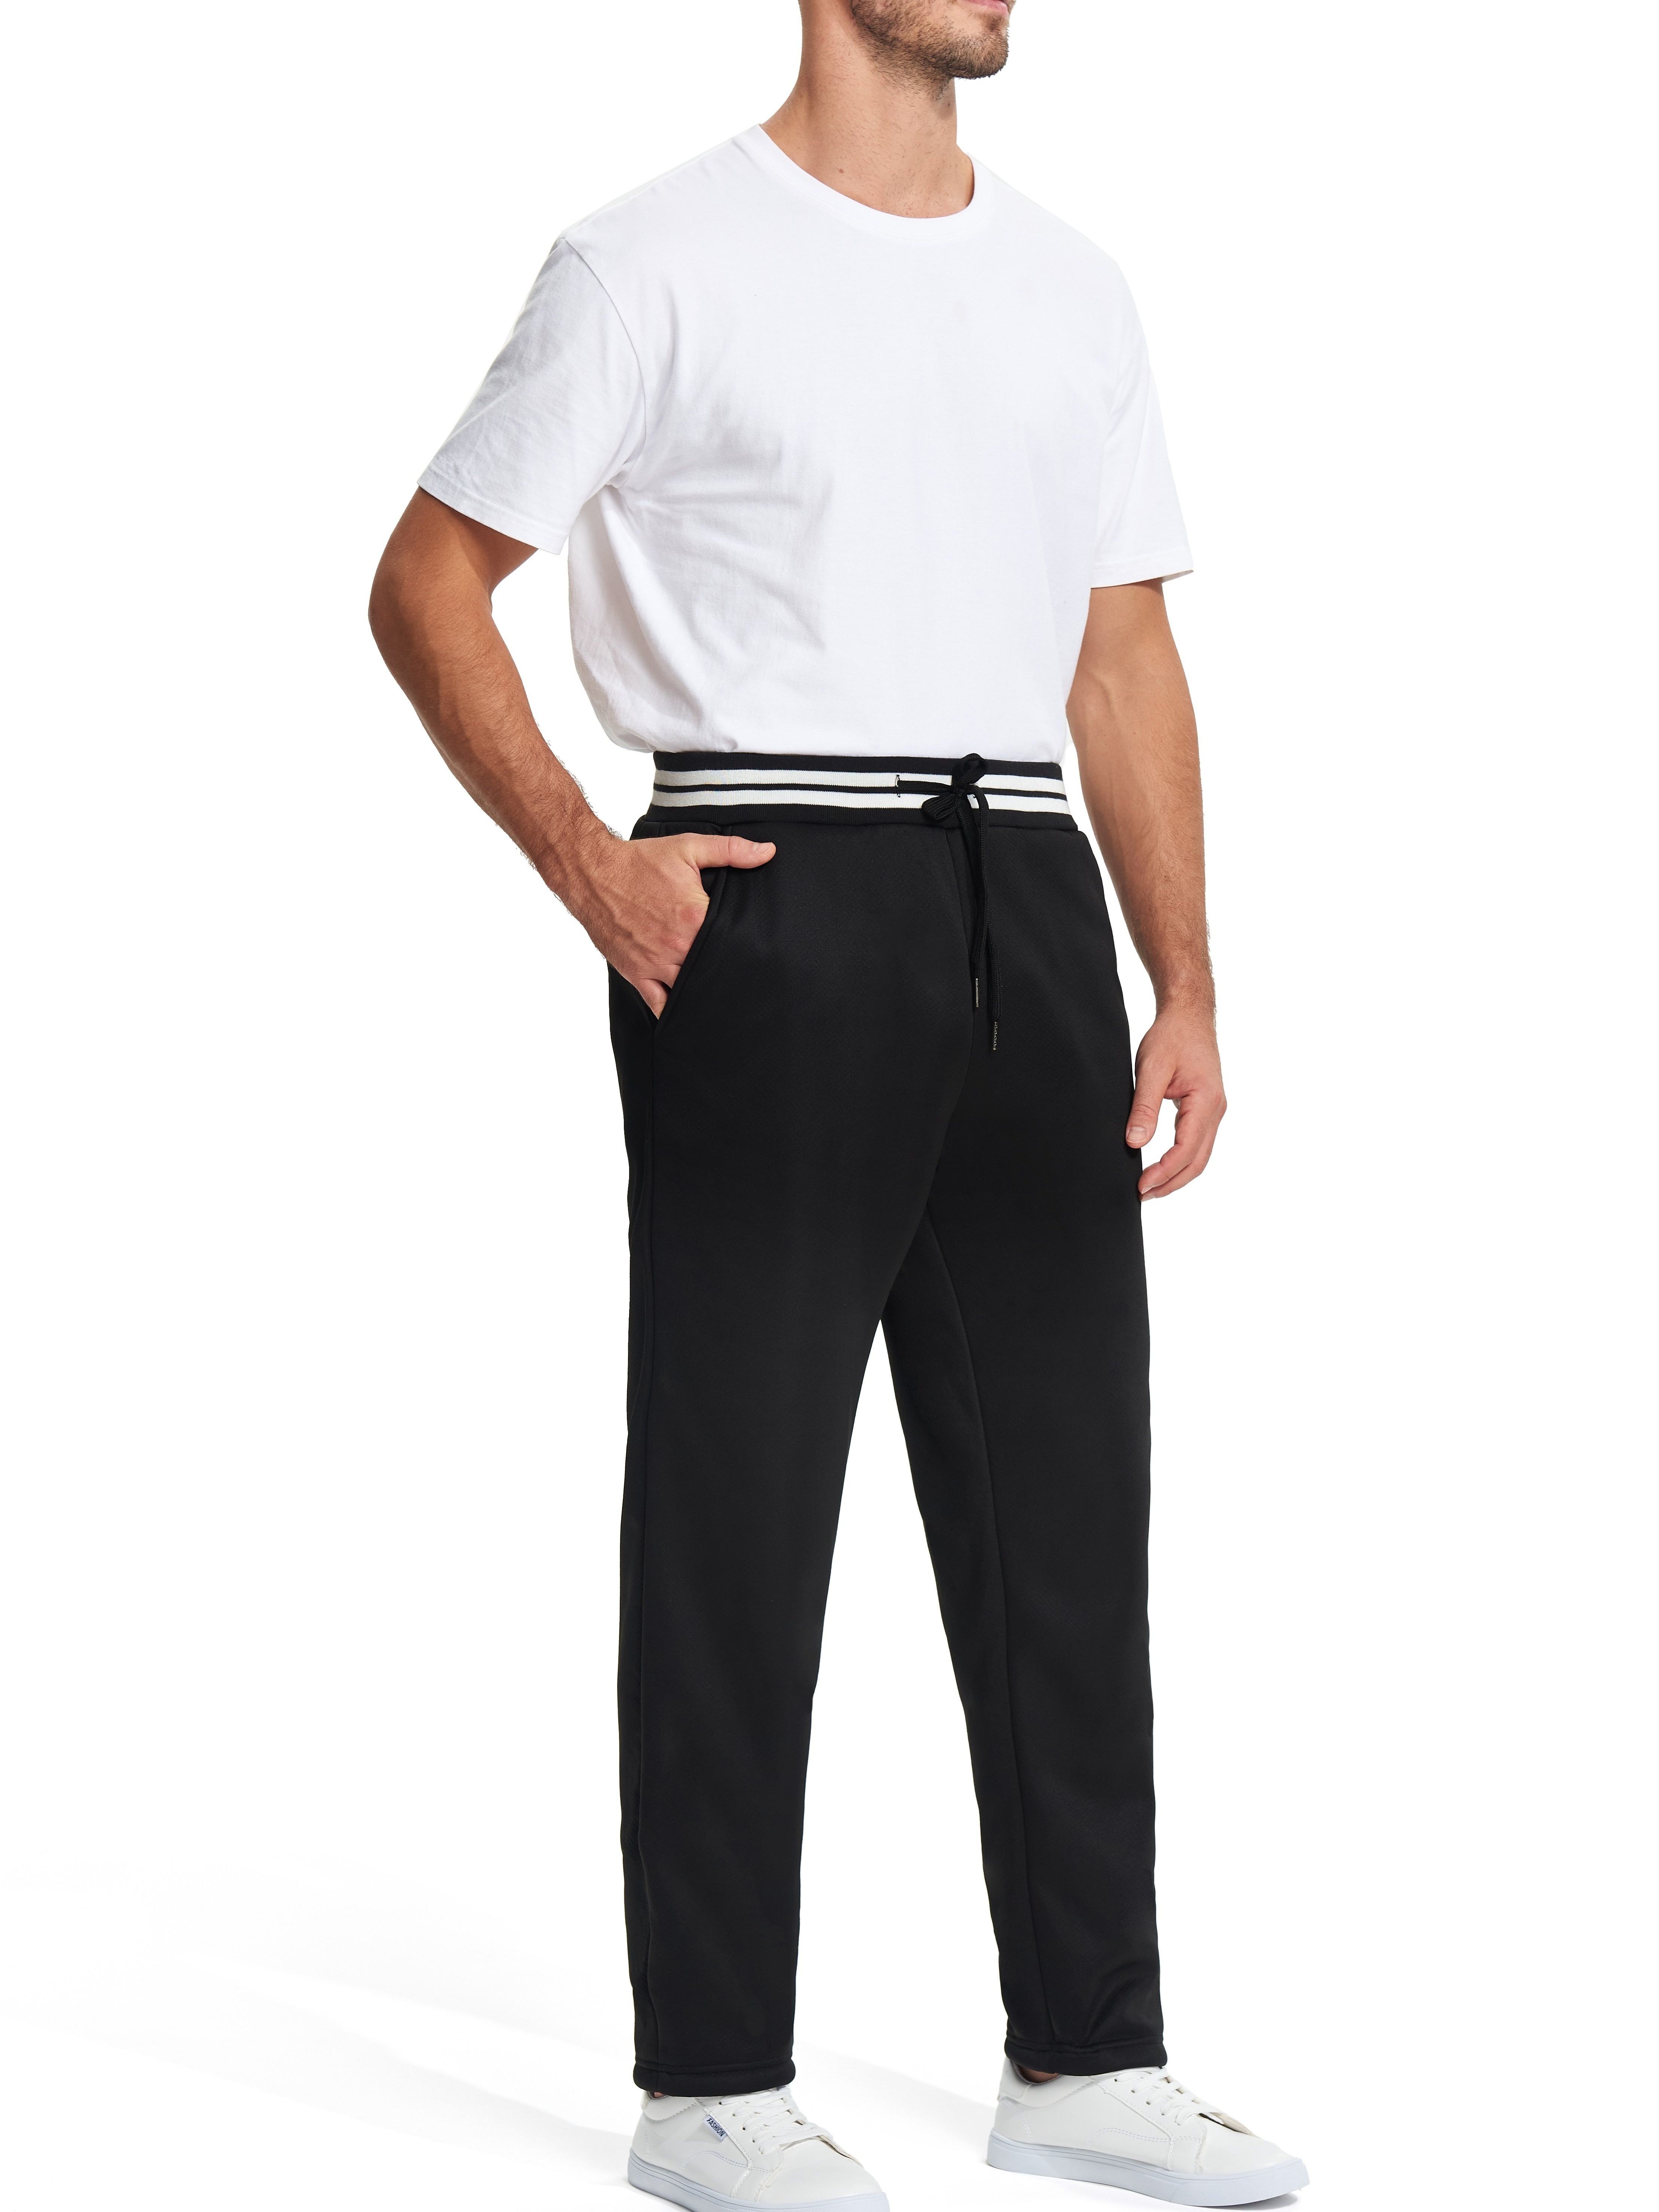 Pantalon Thermique Épais Doublé Polaire Pour Hommes Jogging